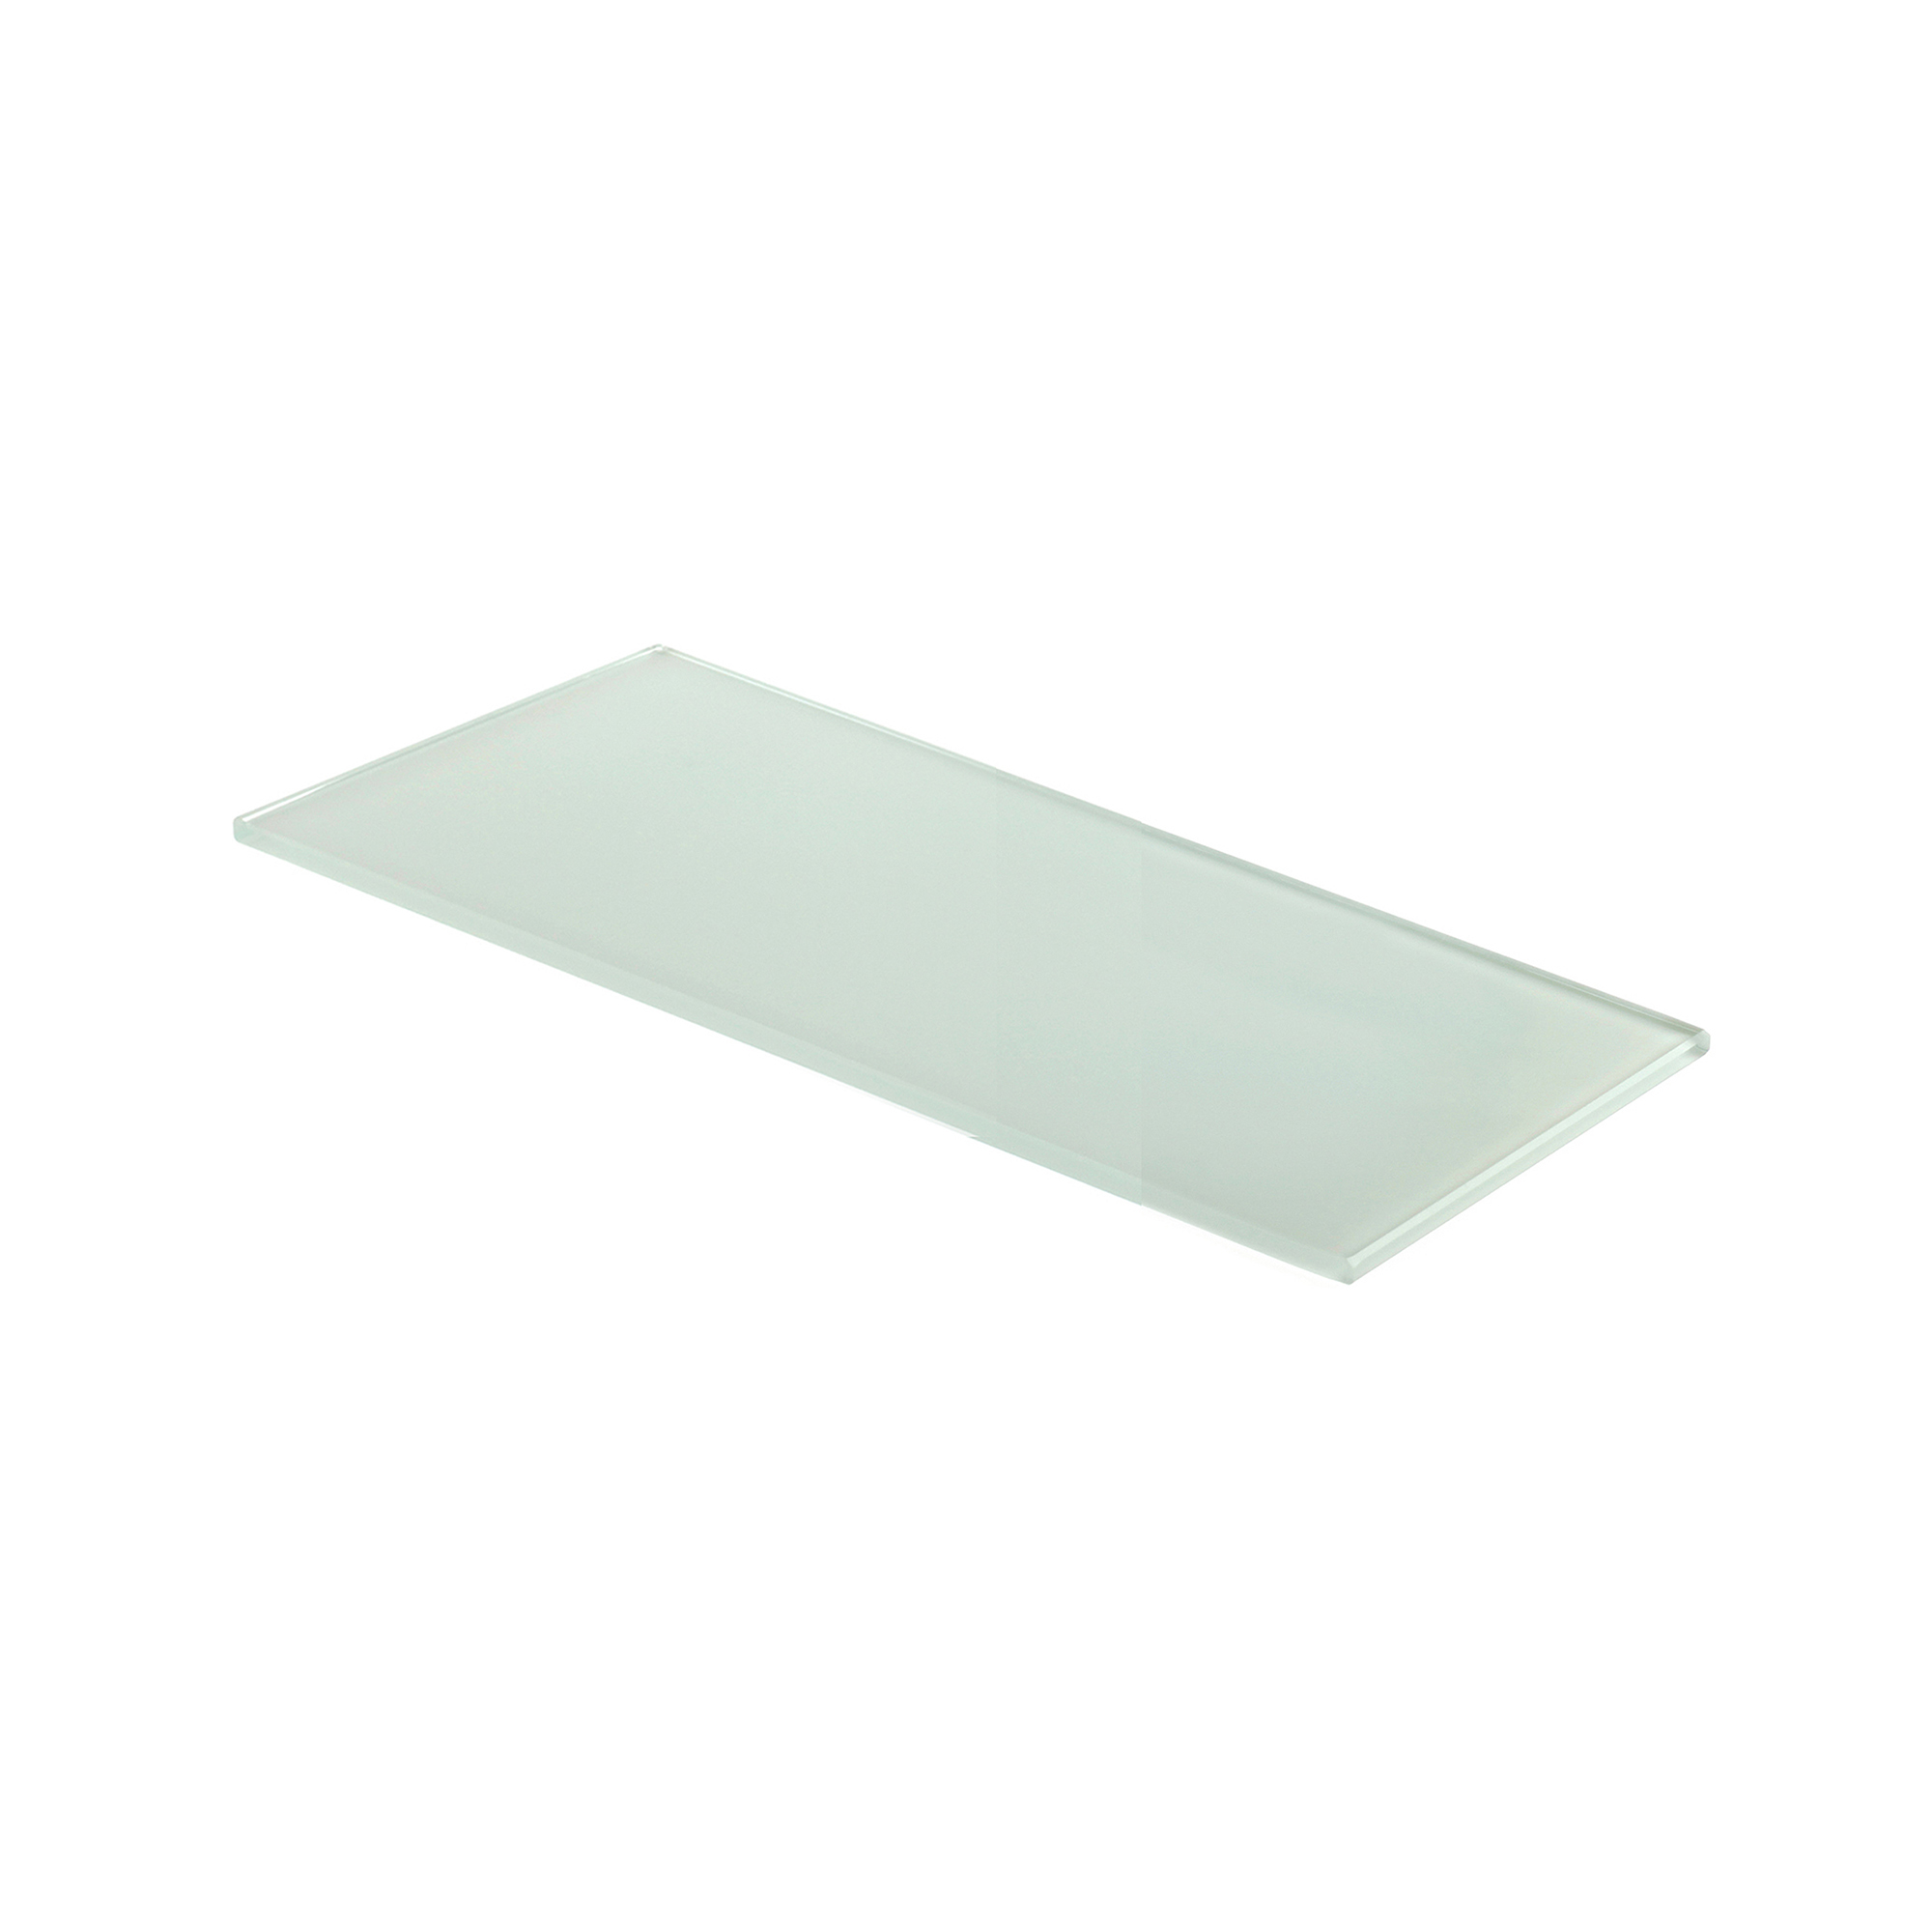 Étagère en verre Finition blanche | Dimensions 300*6*120mm | Épaisseur de l'étagère : 6 mm | 1 unité